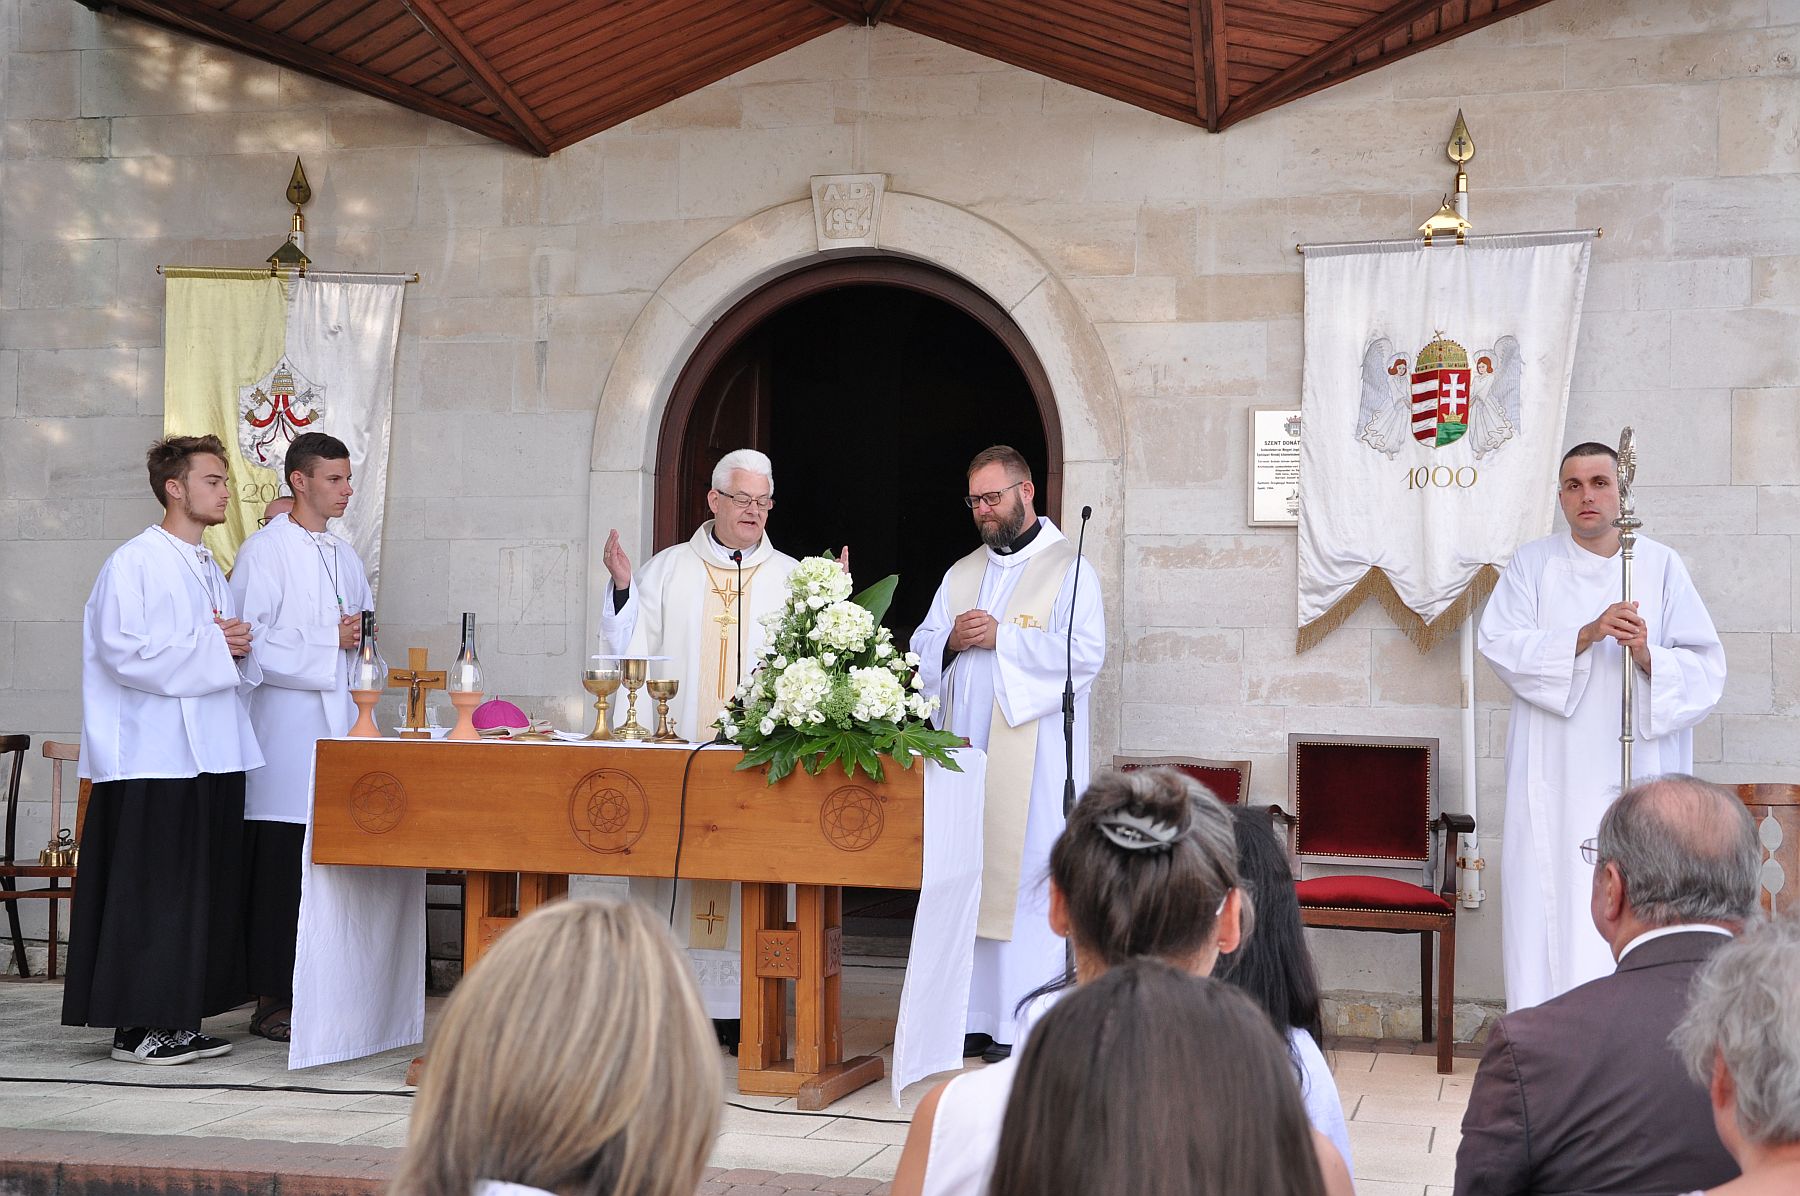 Fehérvárért és Magyarországért is szólt az imádság a Szent Donát kápolna búcsúján